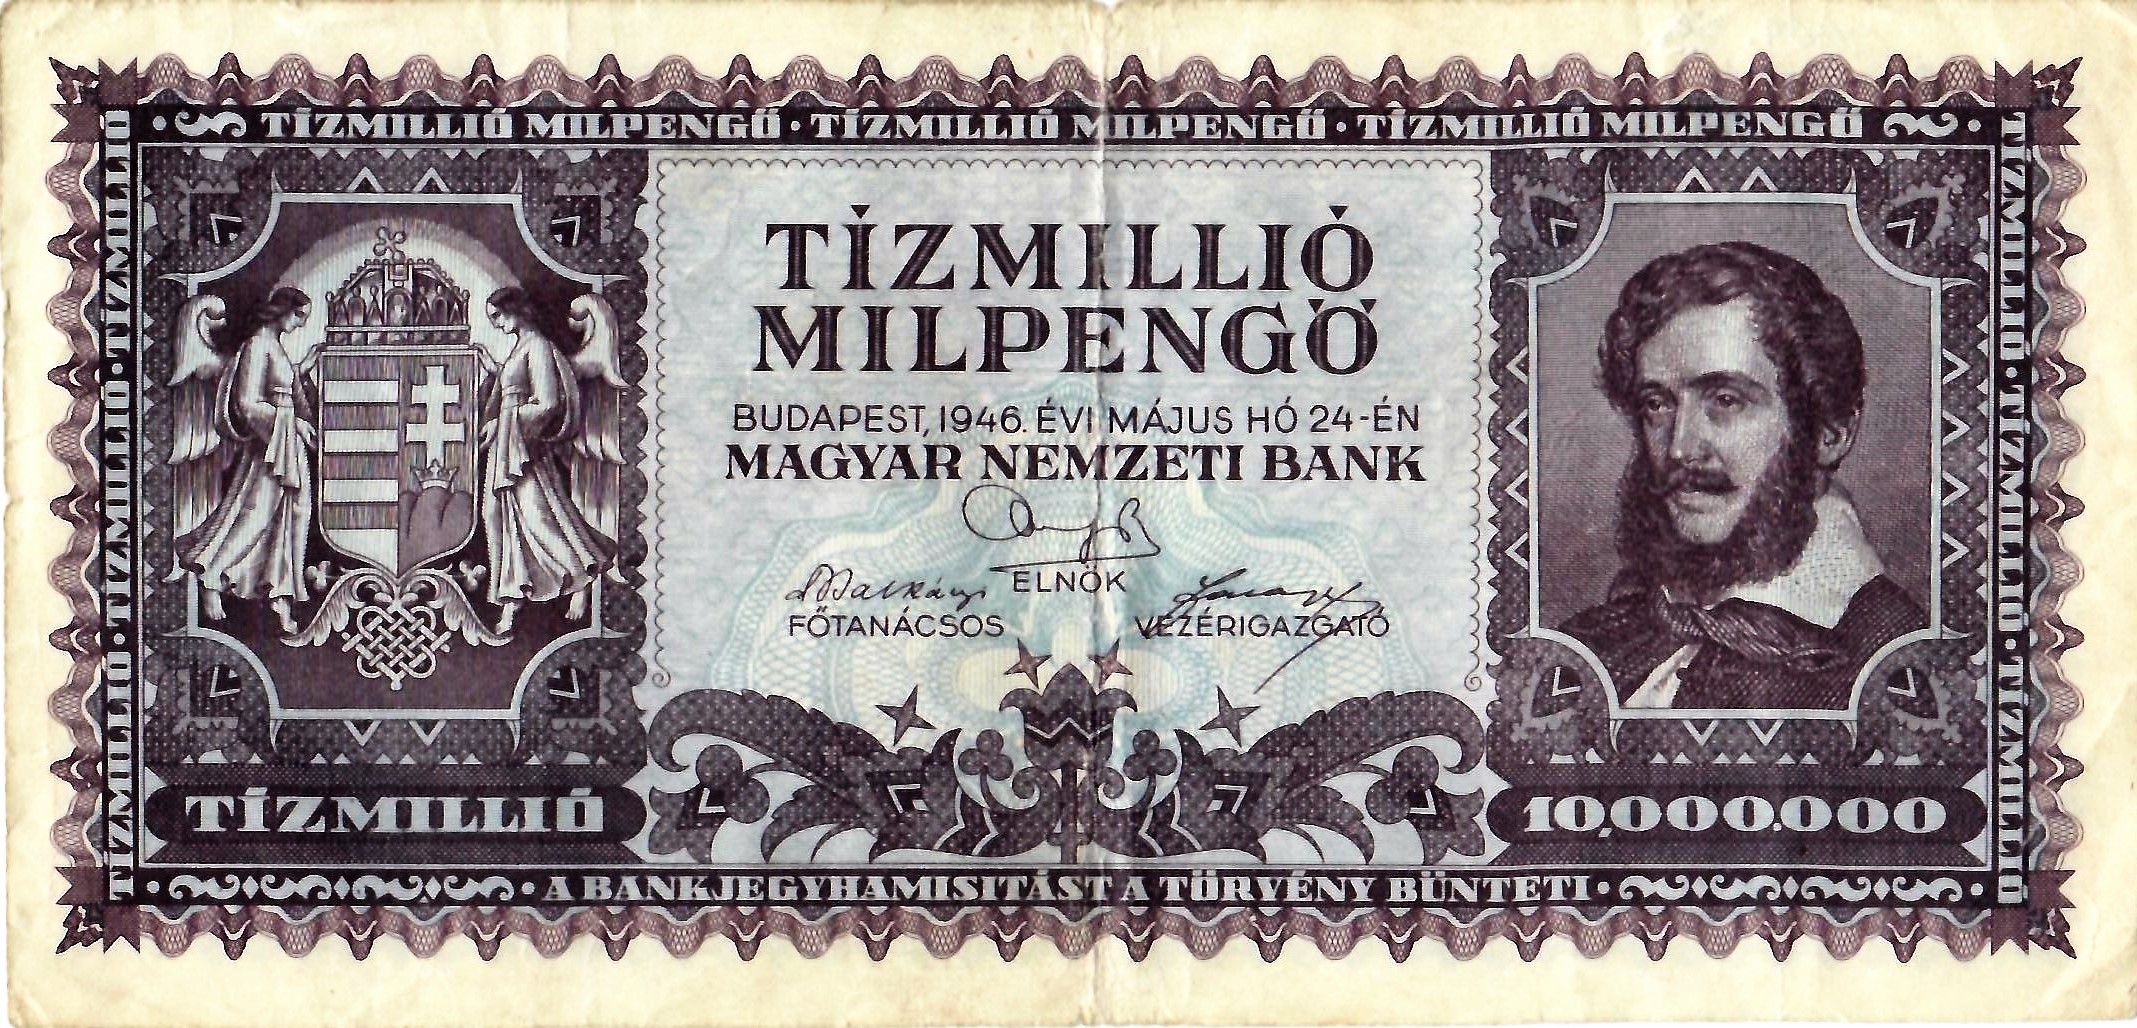 Papírpénz - 10000000 milpengő (Dr. Jablonkay István Helytörténeti Gyűjtemény CC BY-NC-SA)